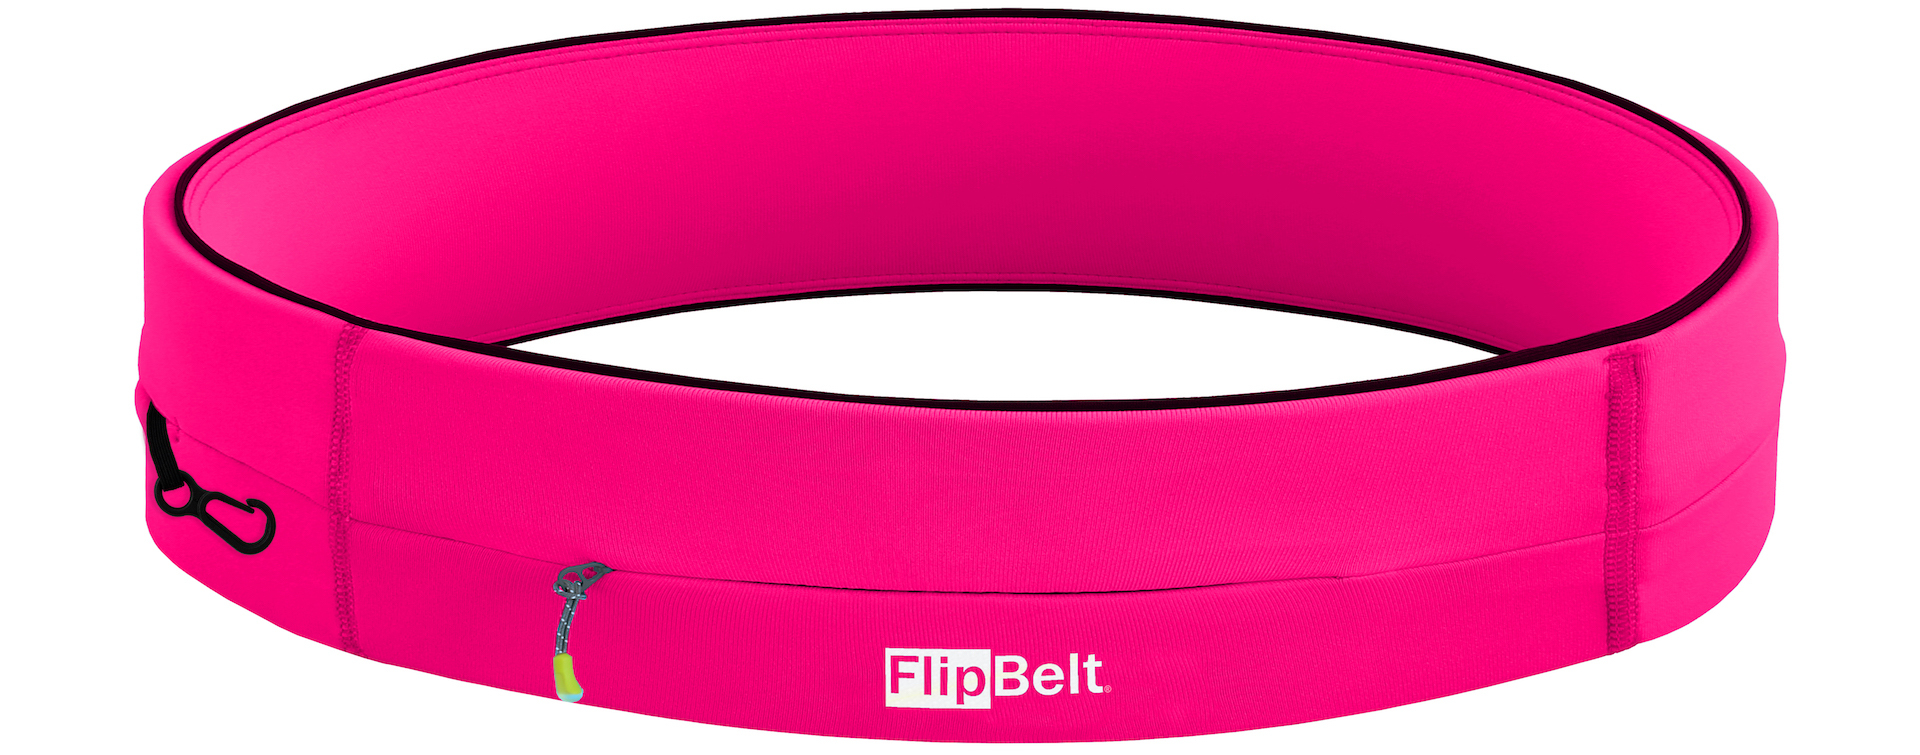 FlipBelt - Zipper - Running belt - Hardloop belt - Hardloop riem - Roze - S